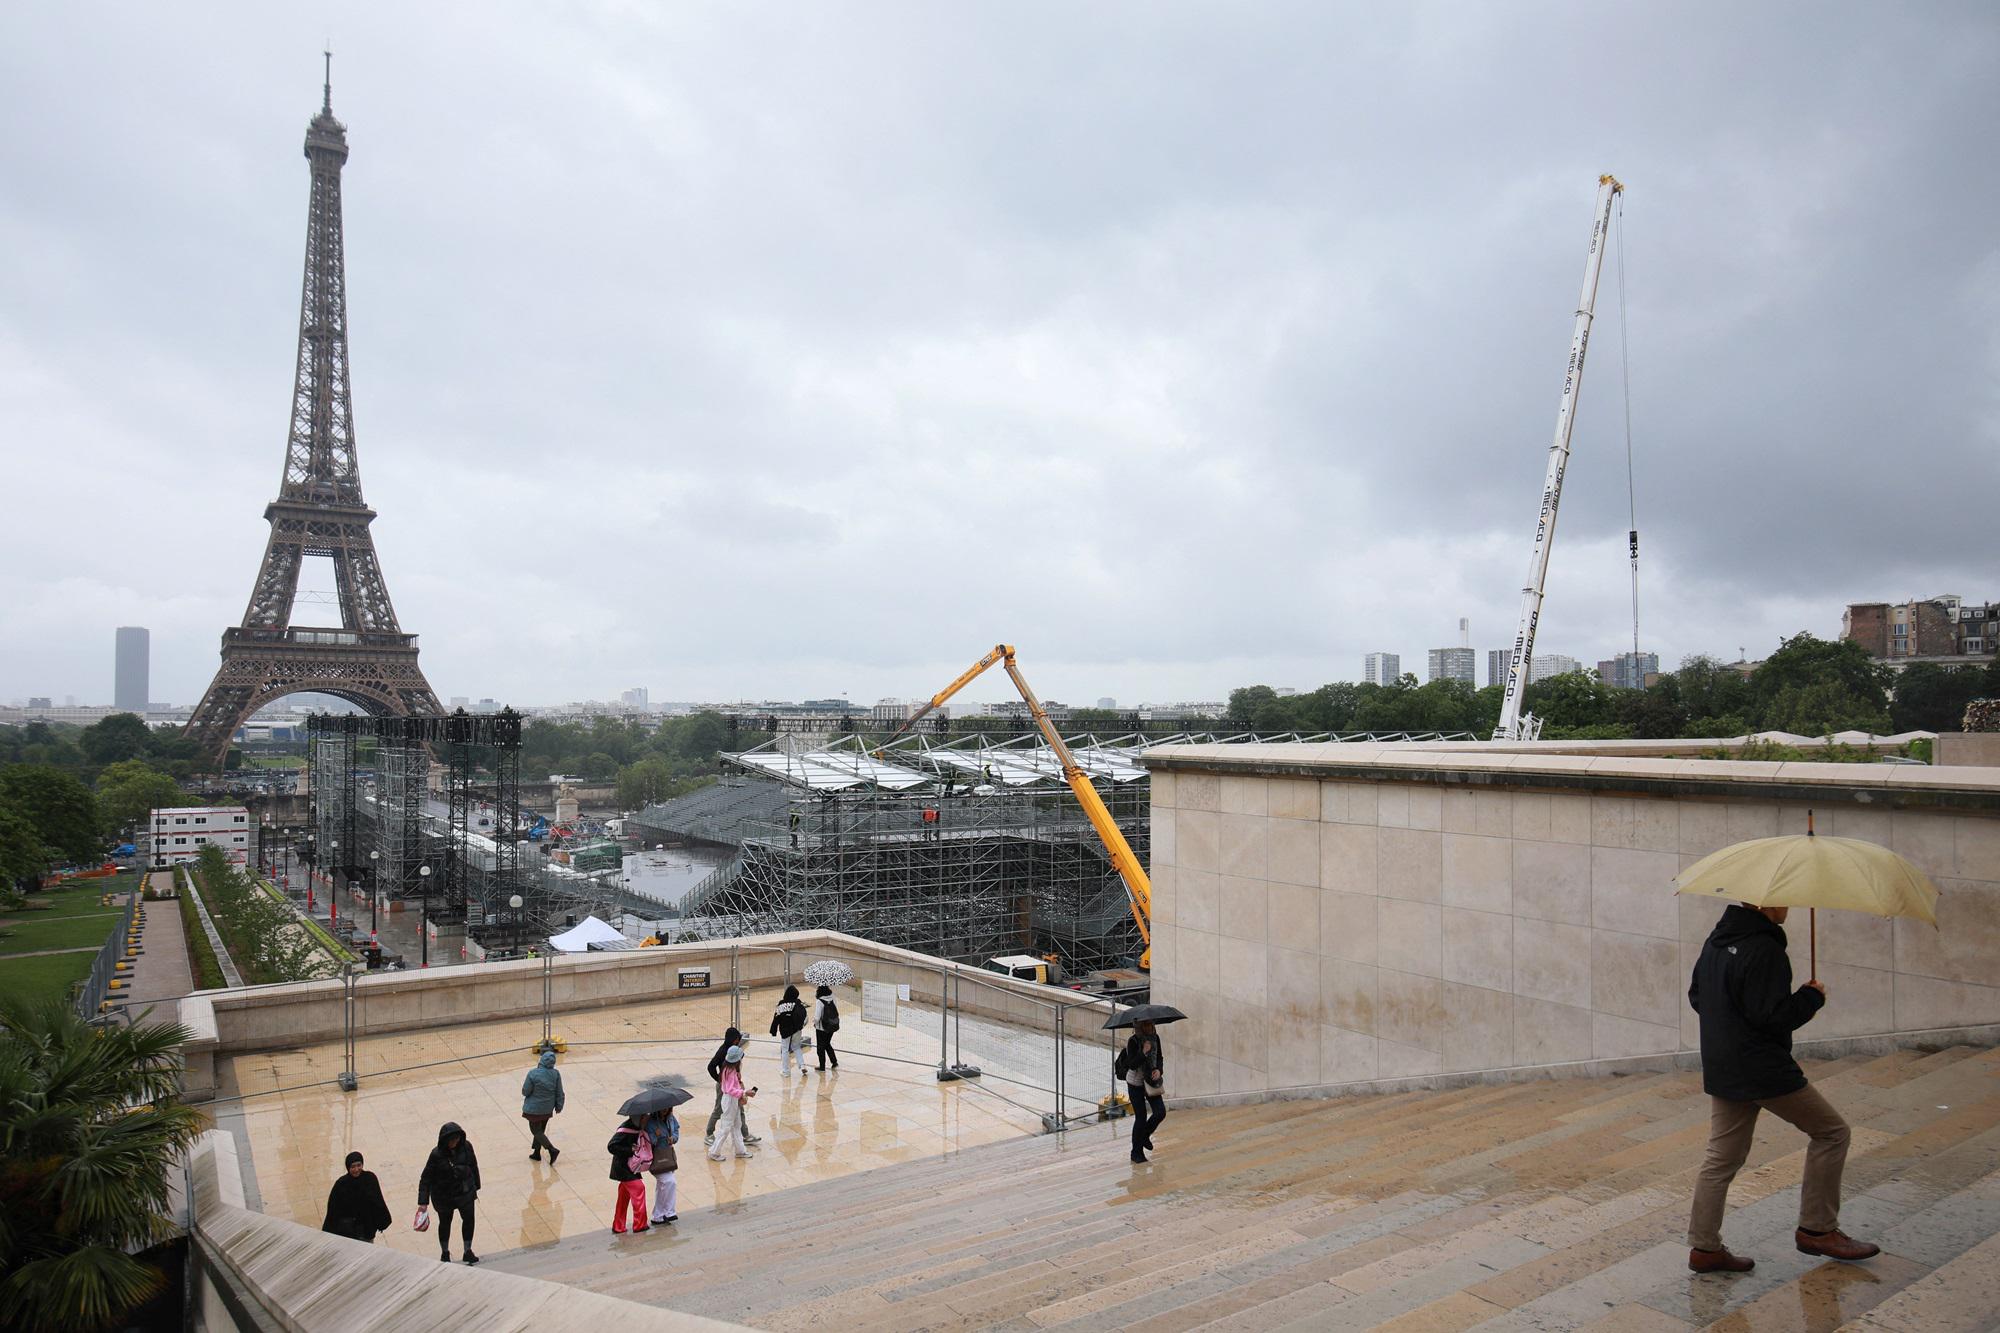 Bare sotto Torre Eiffel per i soldati francesi in Ucraina - sospetti 007 su Russia